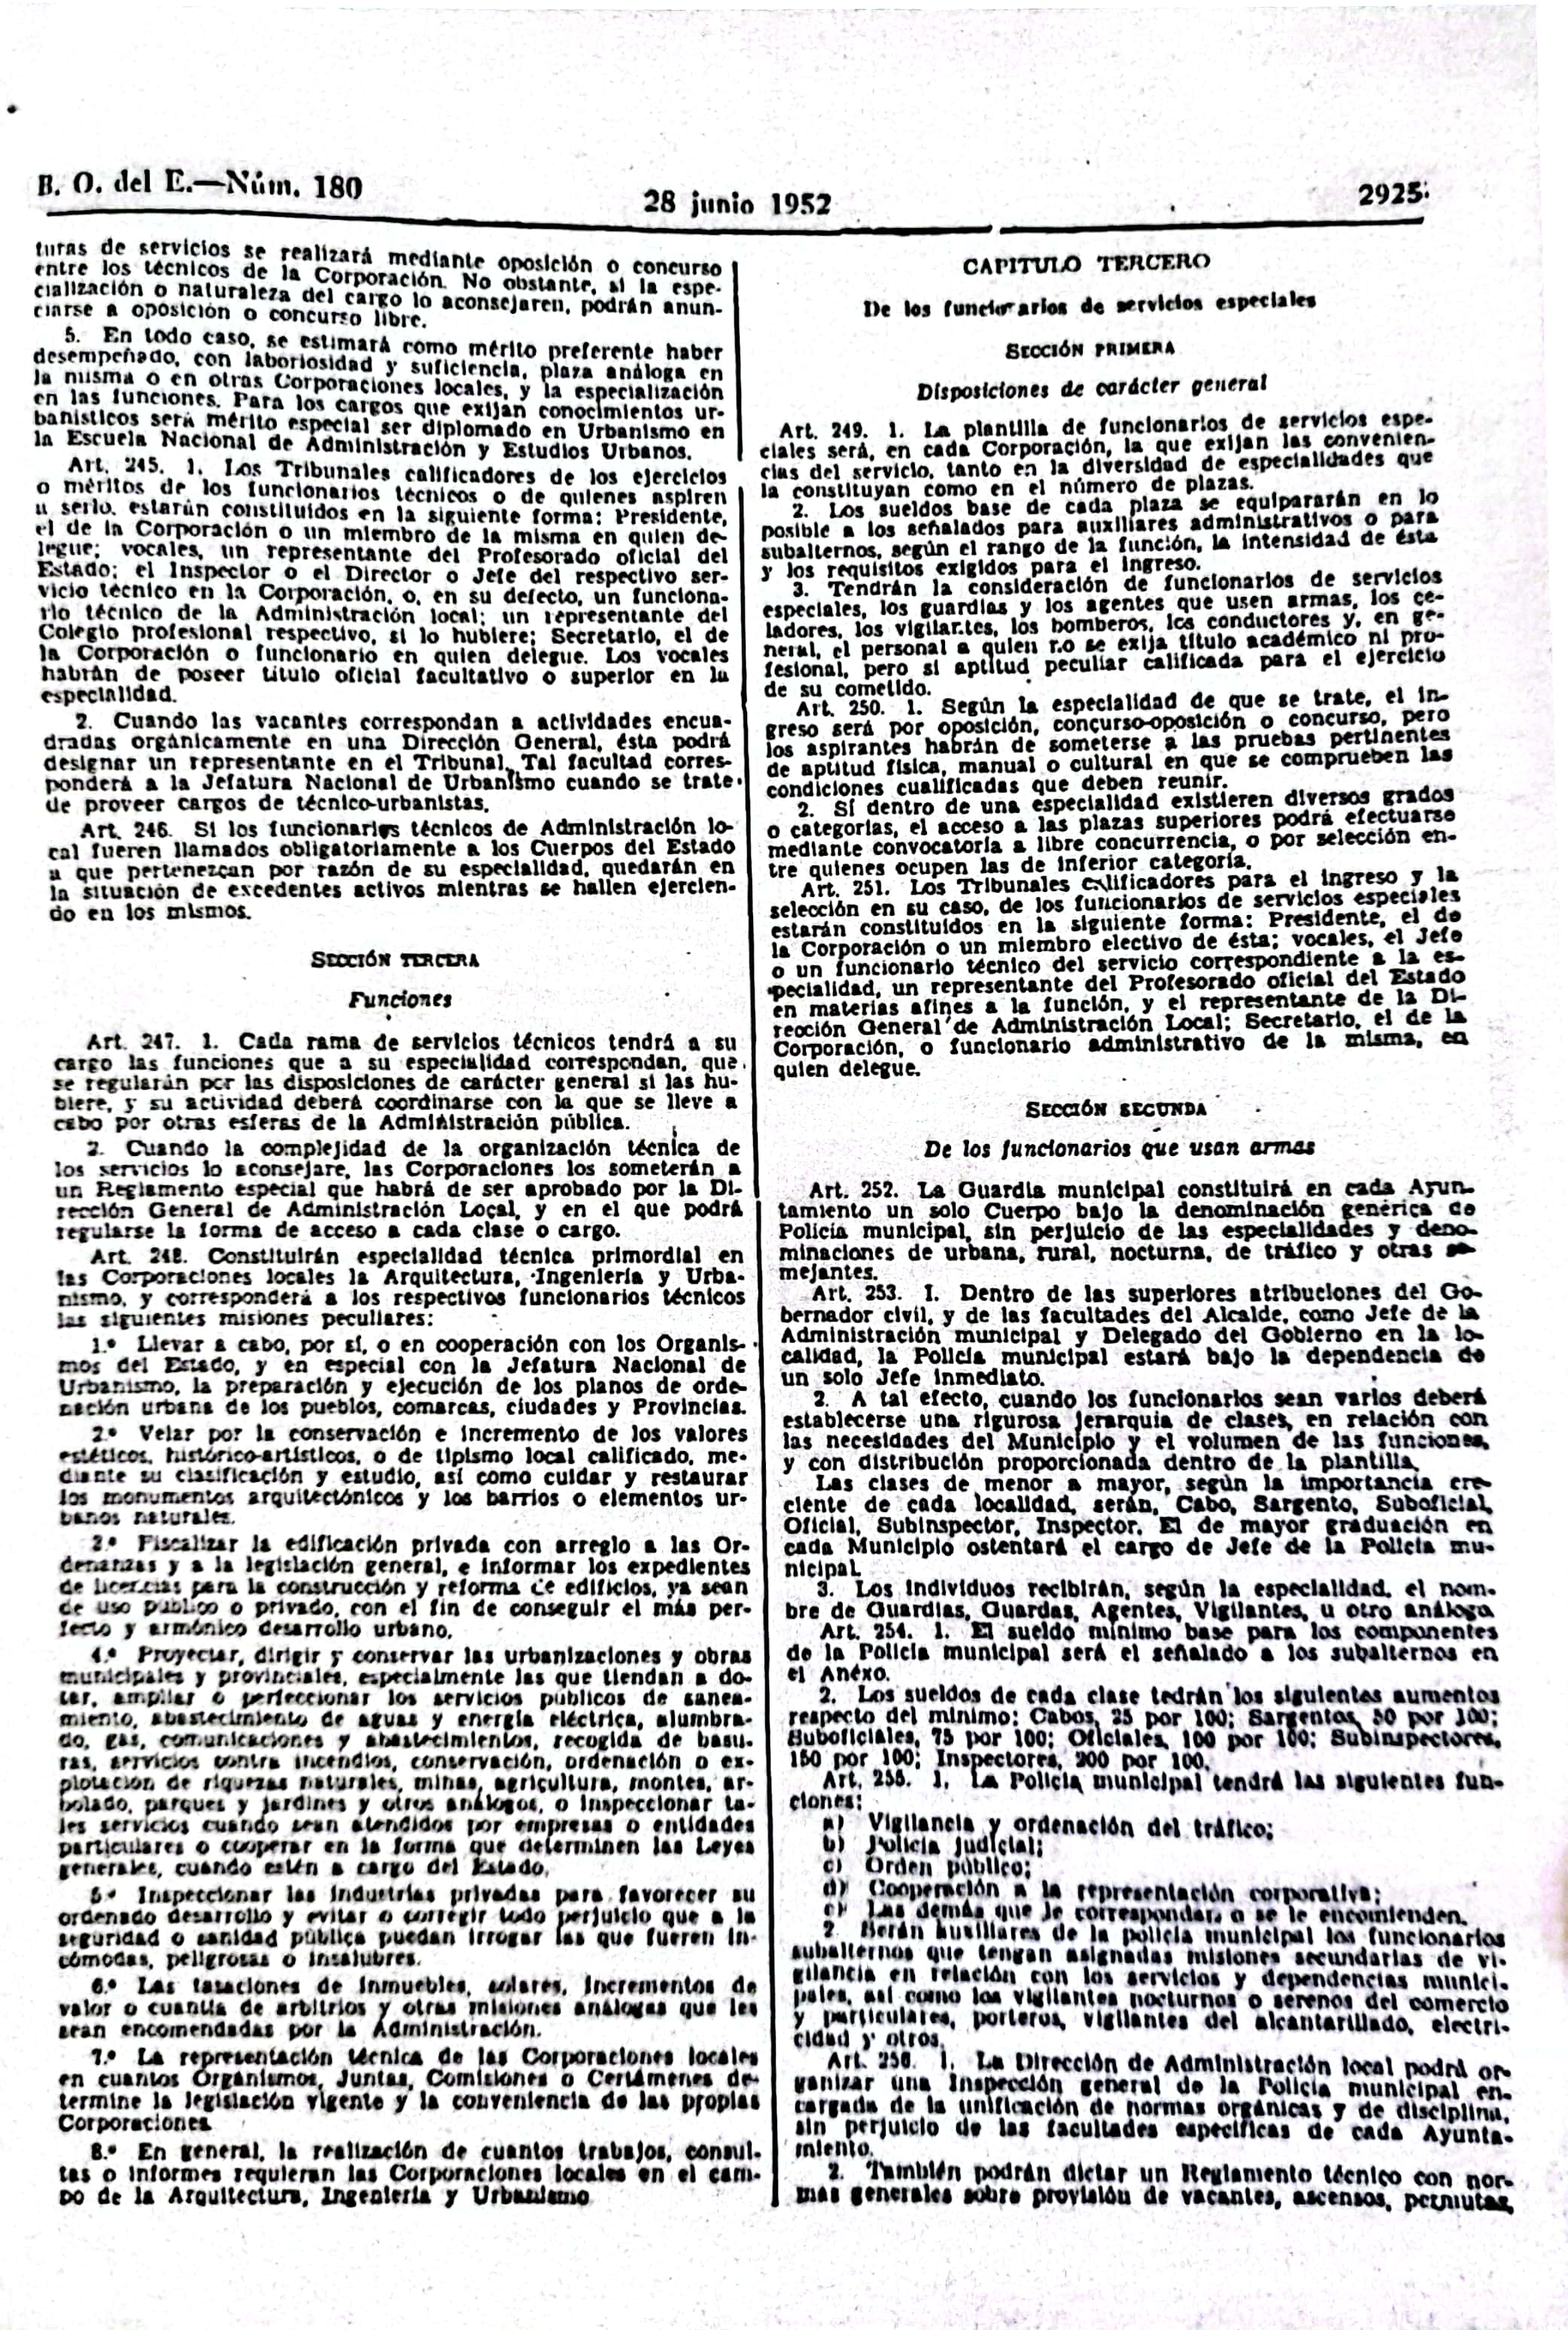 Página 2 del decreto de 1952